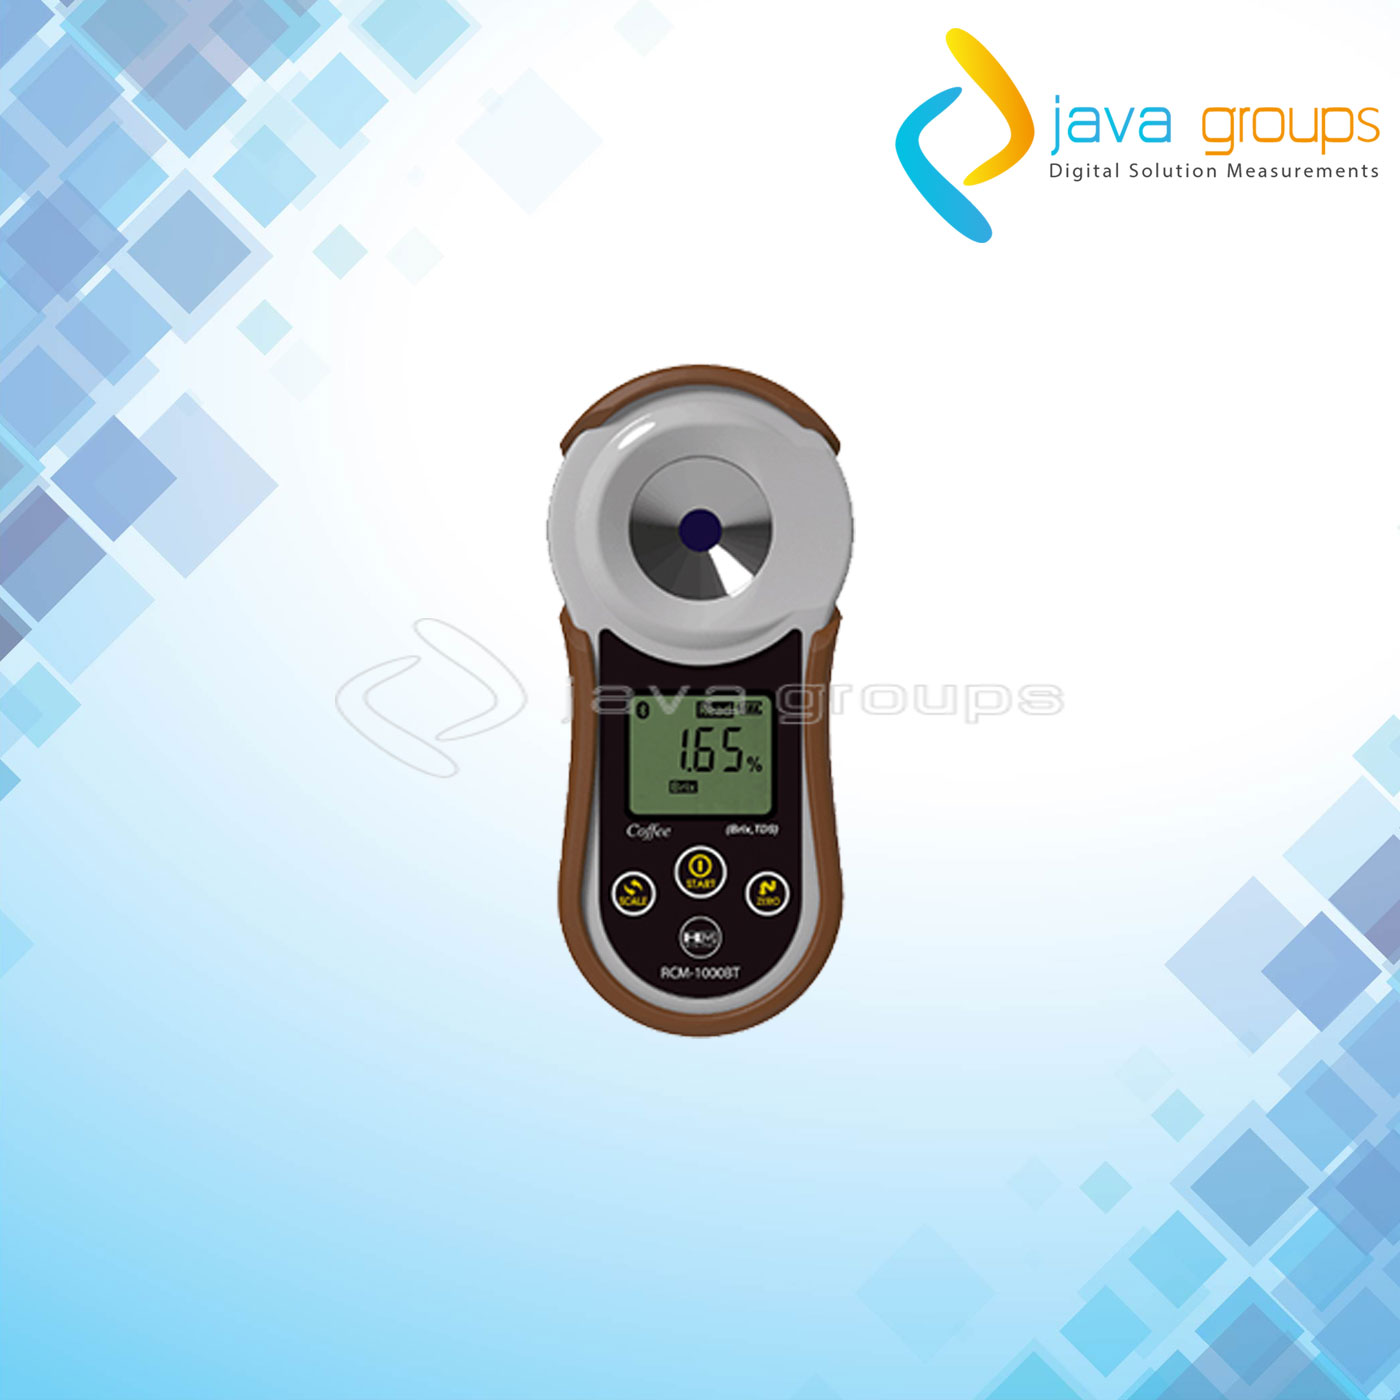 Alat Refractometer Densitometer Kopi RCM-1000BT